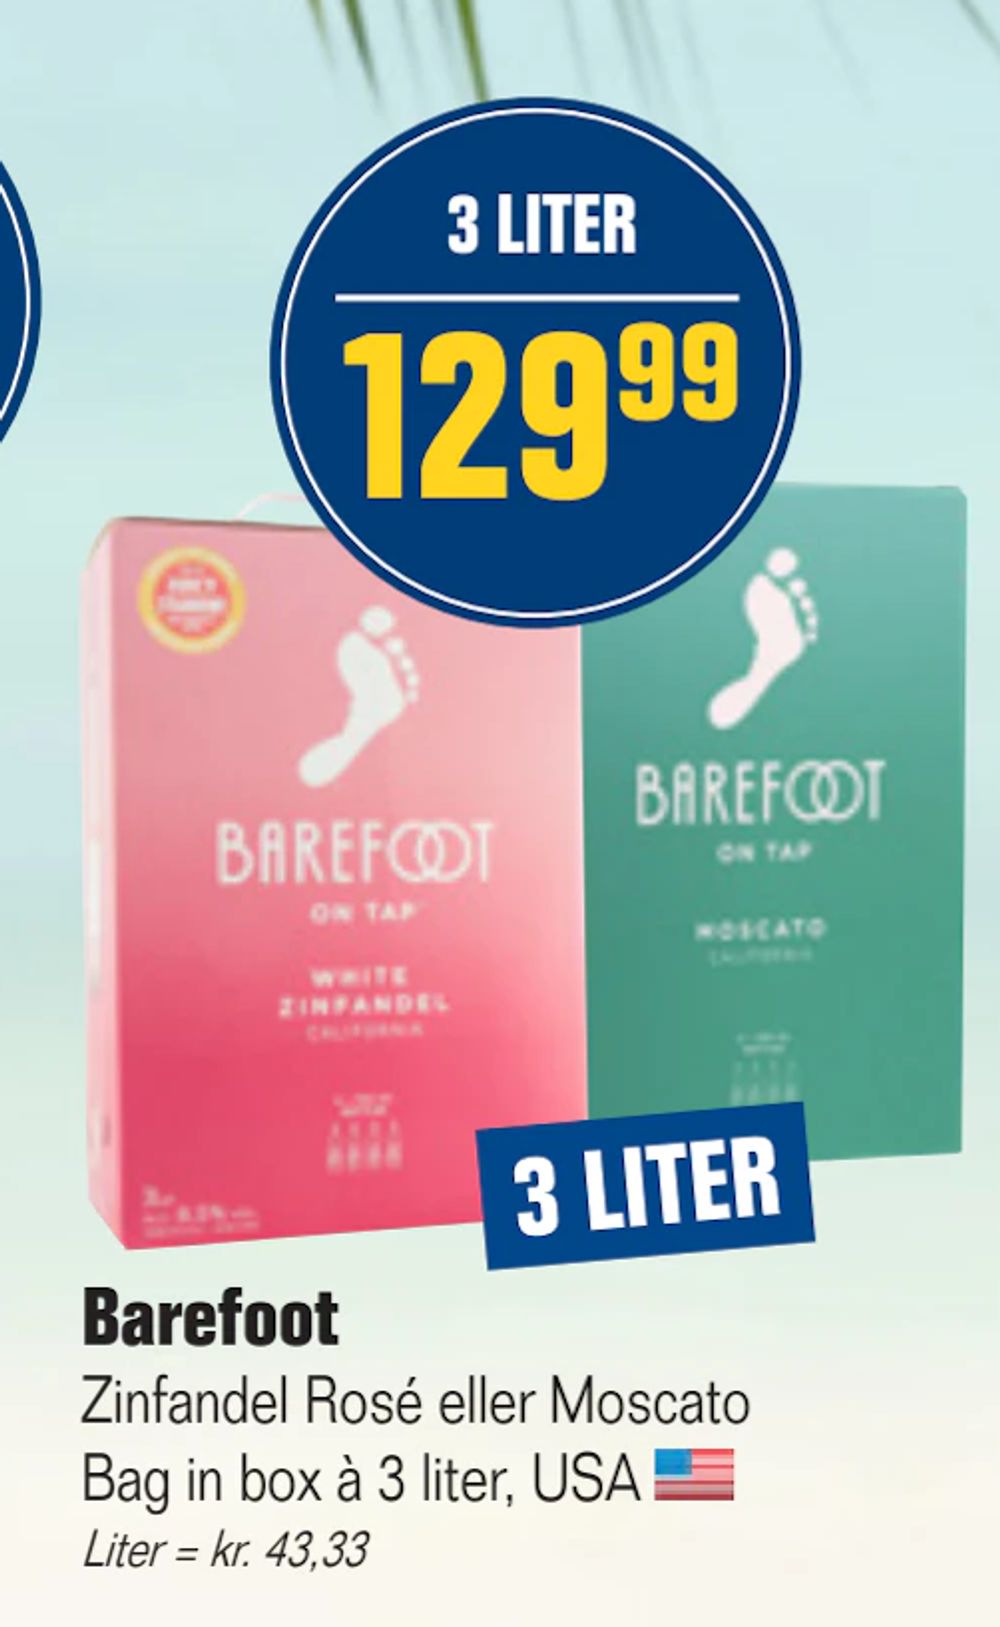 Tilbud på Barefoot fra Otto Duborg til 129,99 kr.